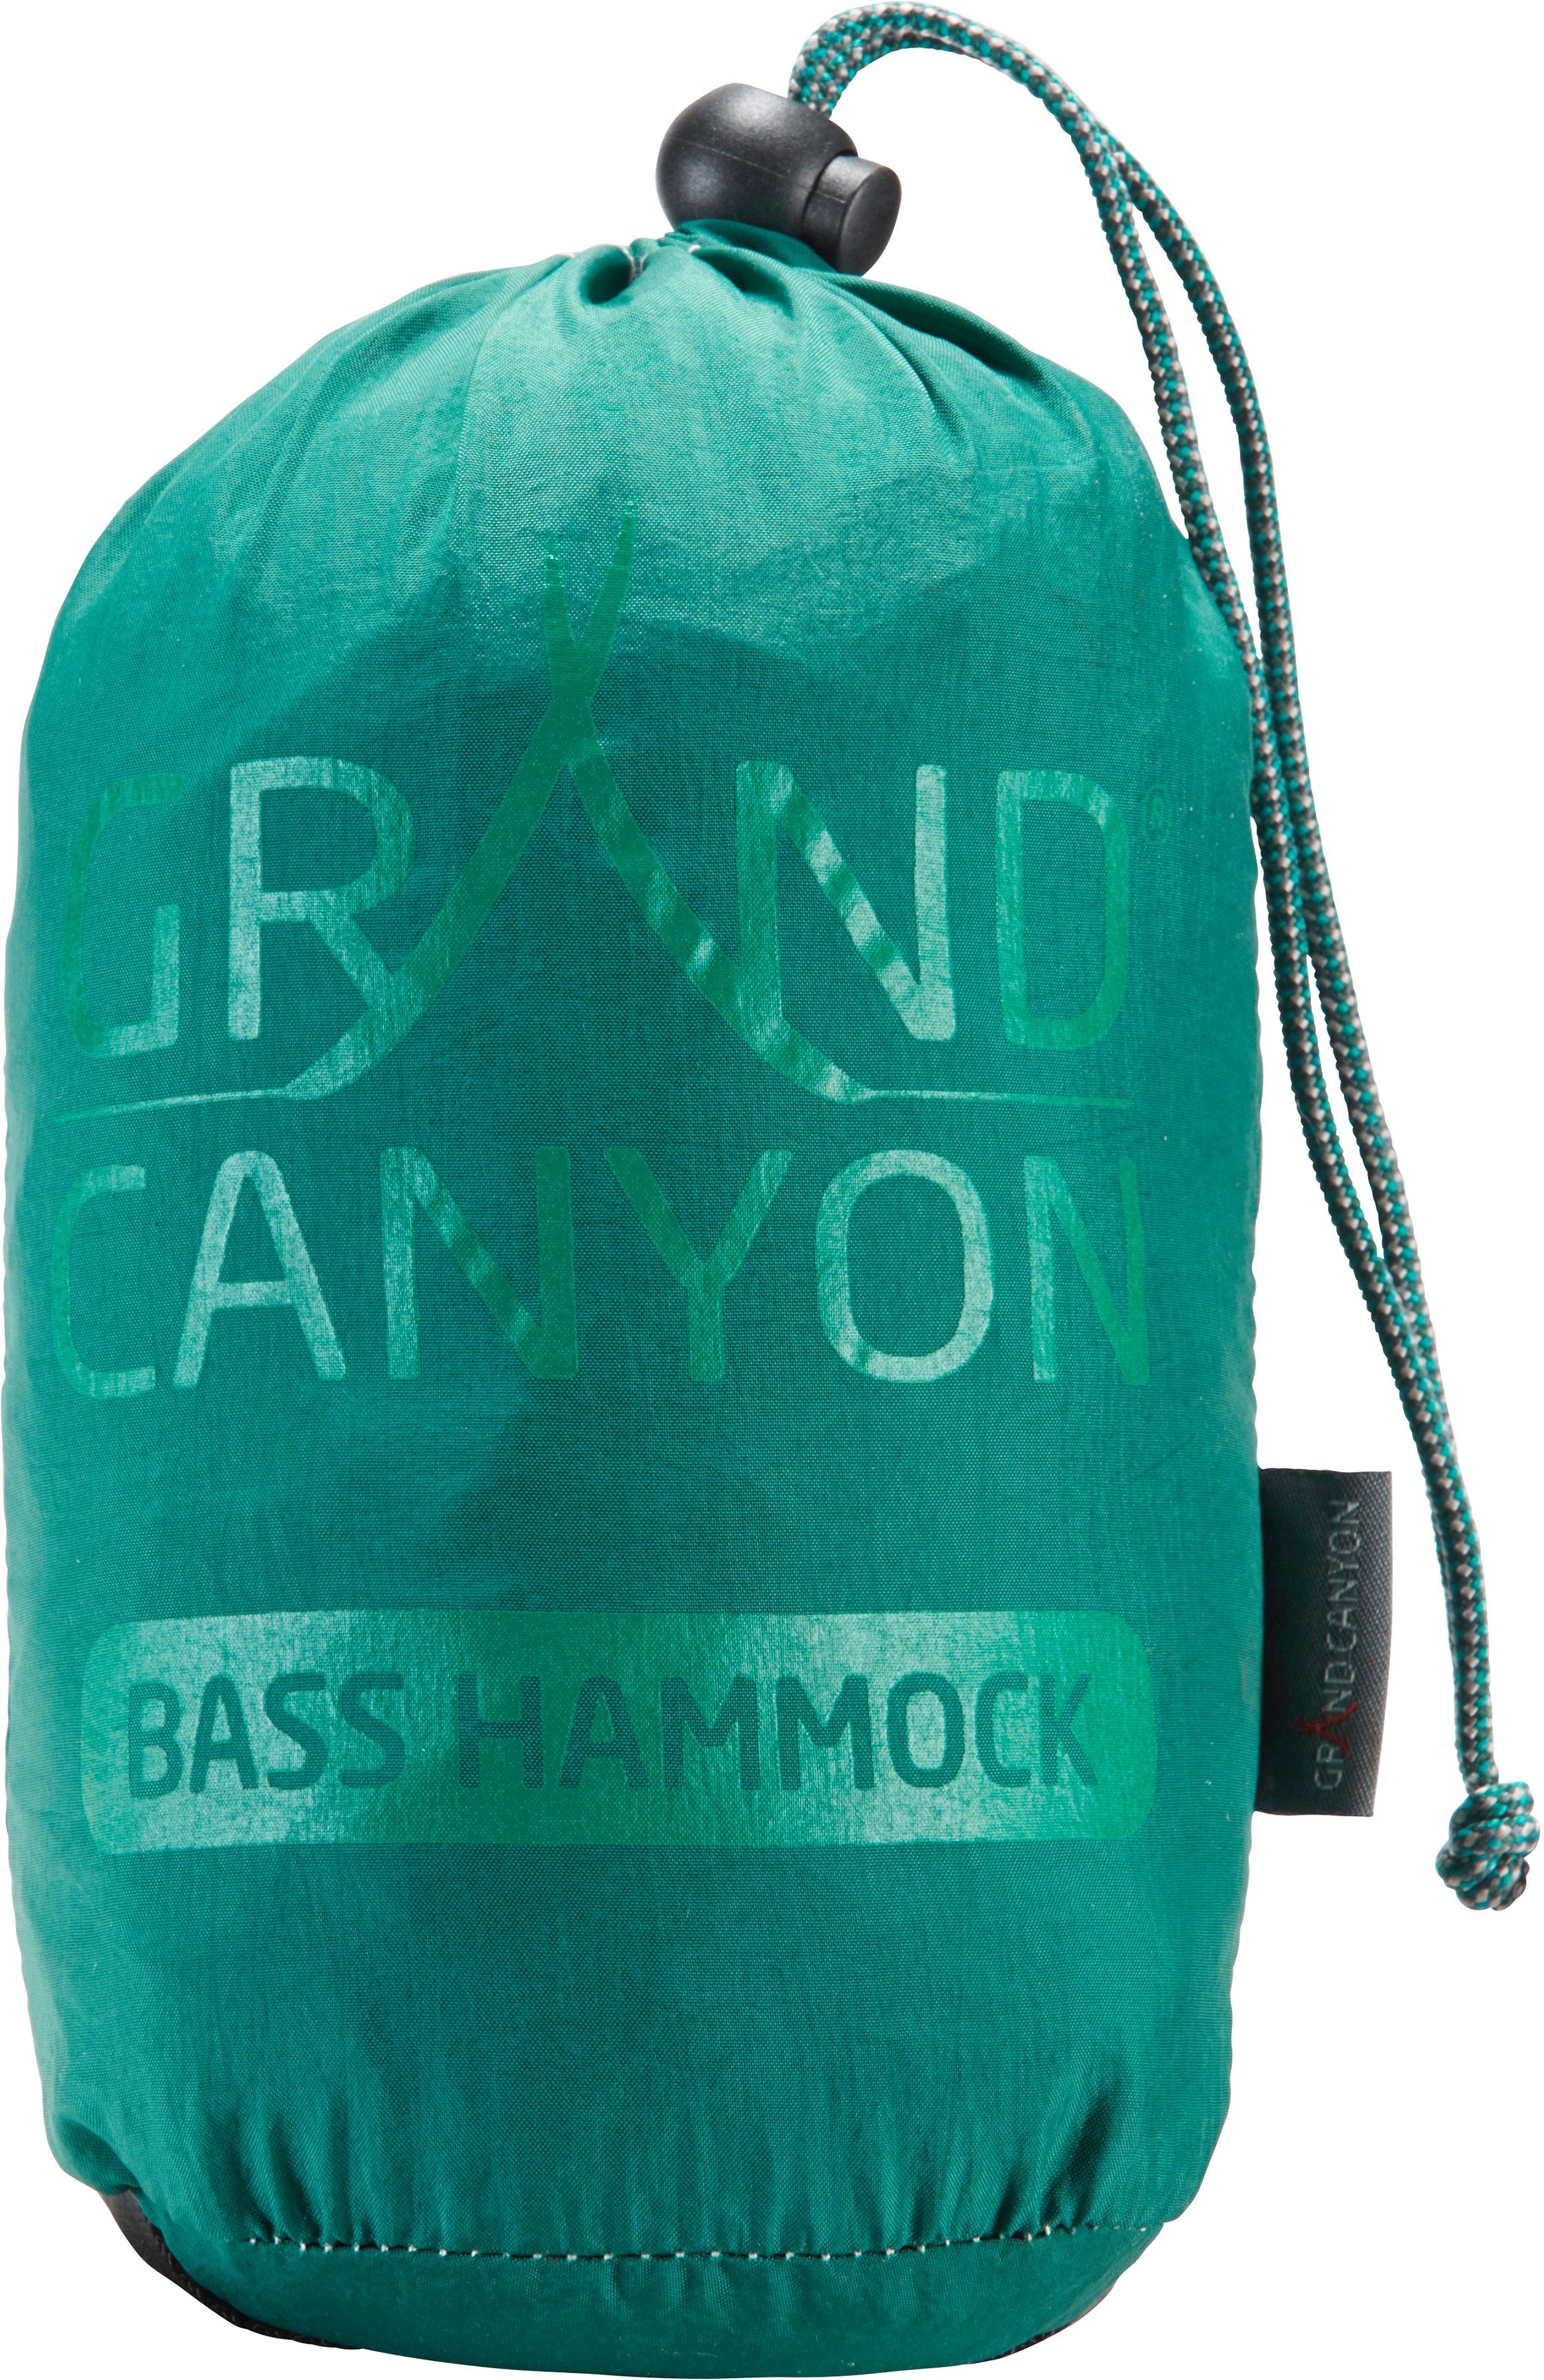 GRAND CANYON Hängematte Bass Hammock grün